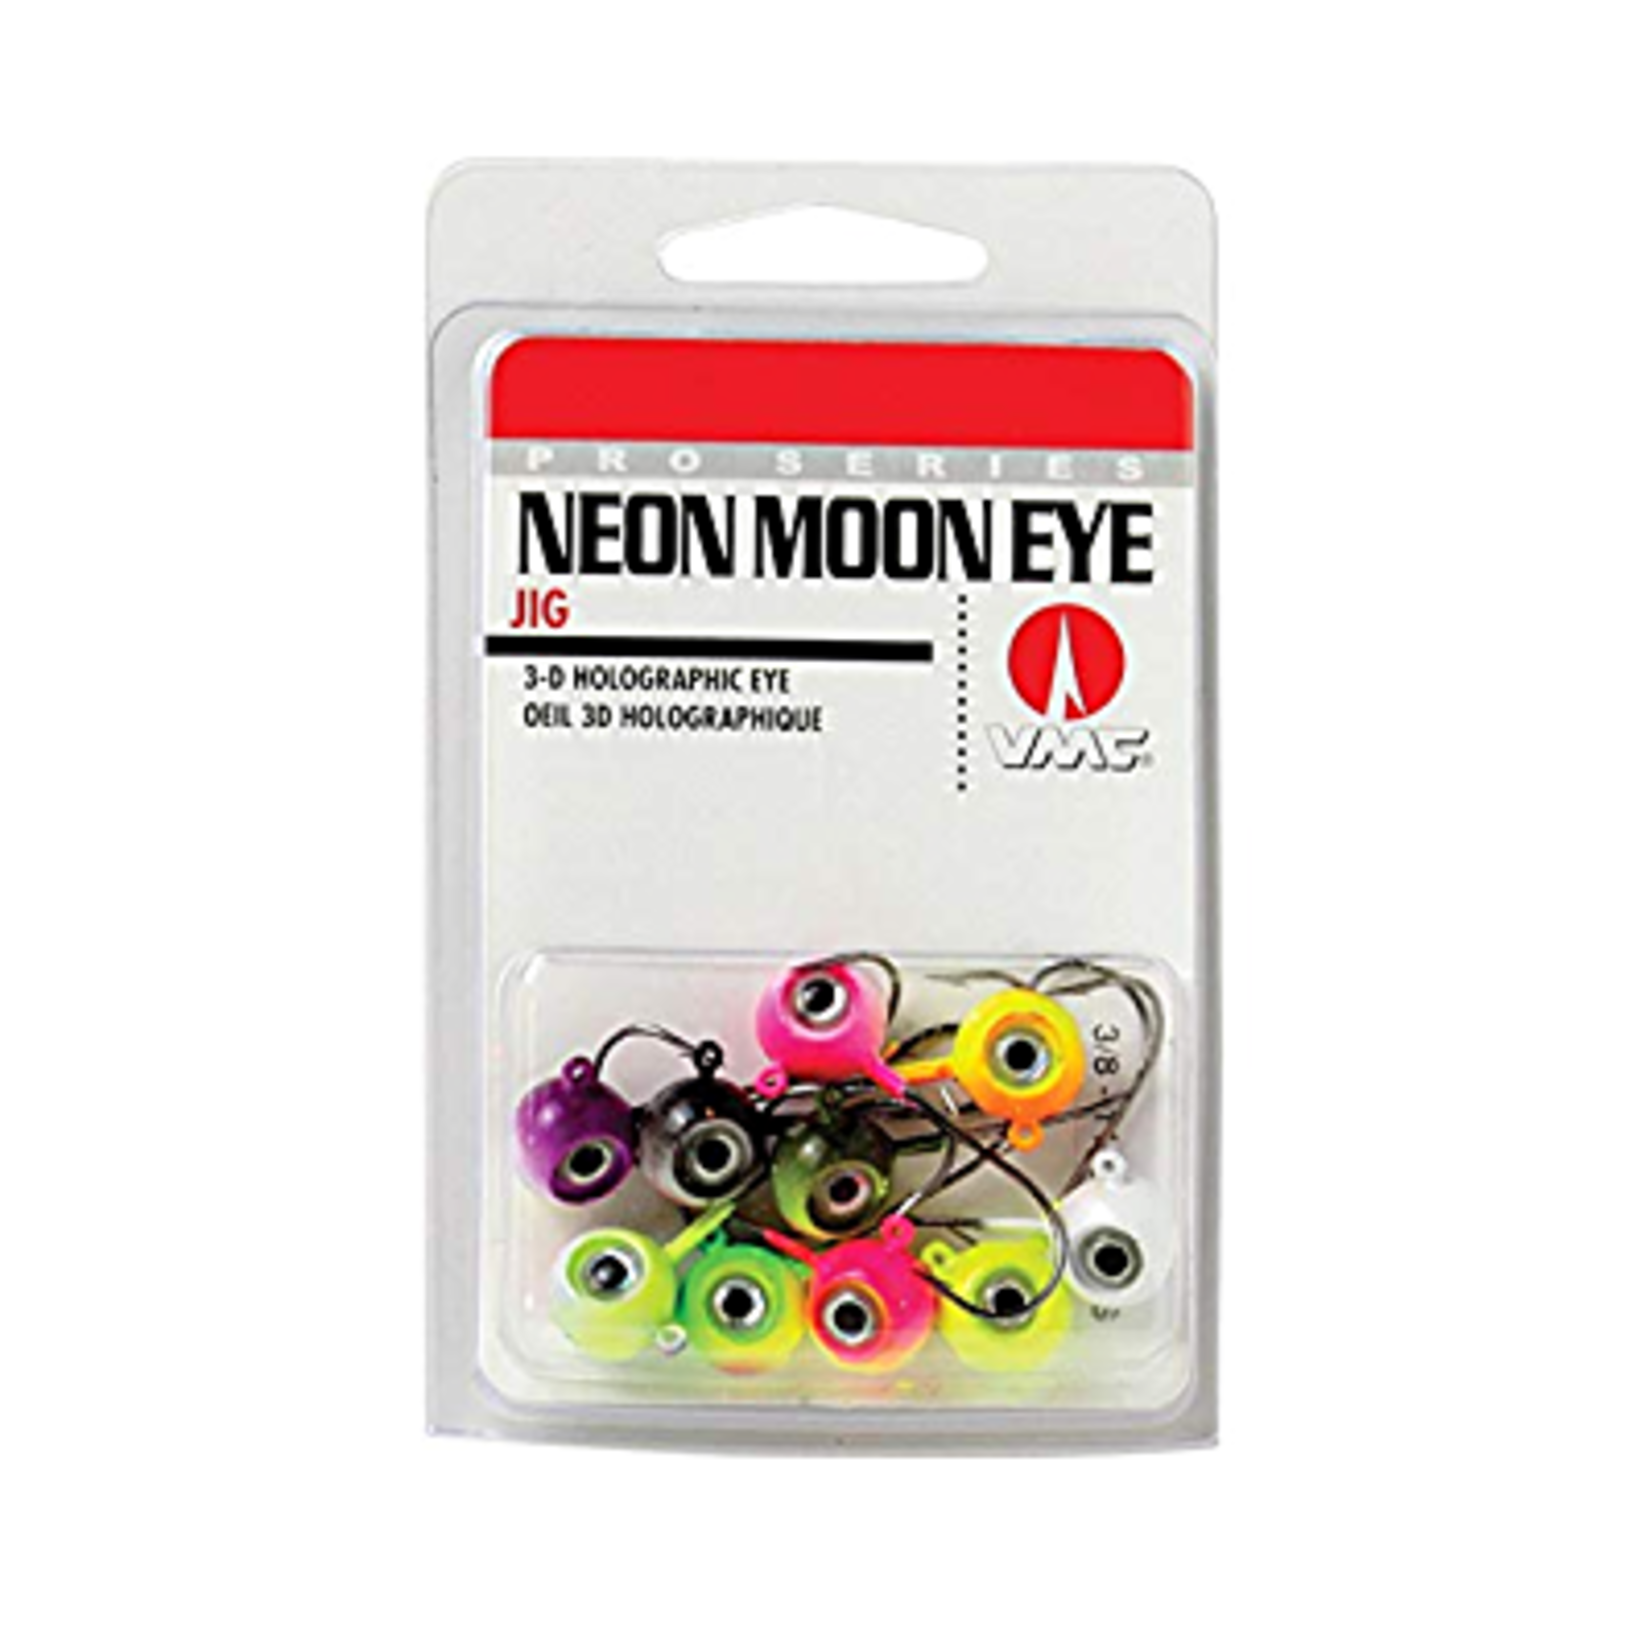 Neon Moon Eye Jigs 3D Holographic Eye 1/4 oz 10 Pcs